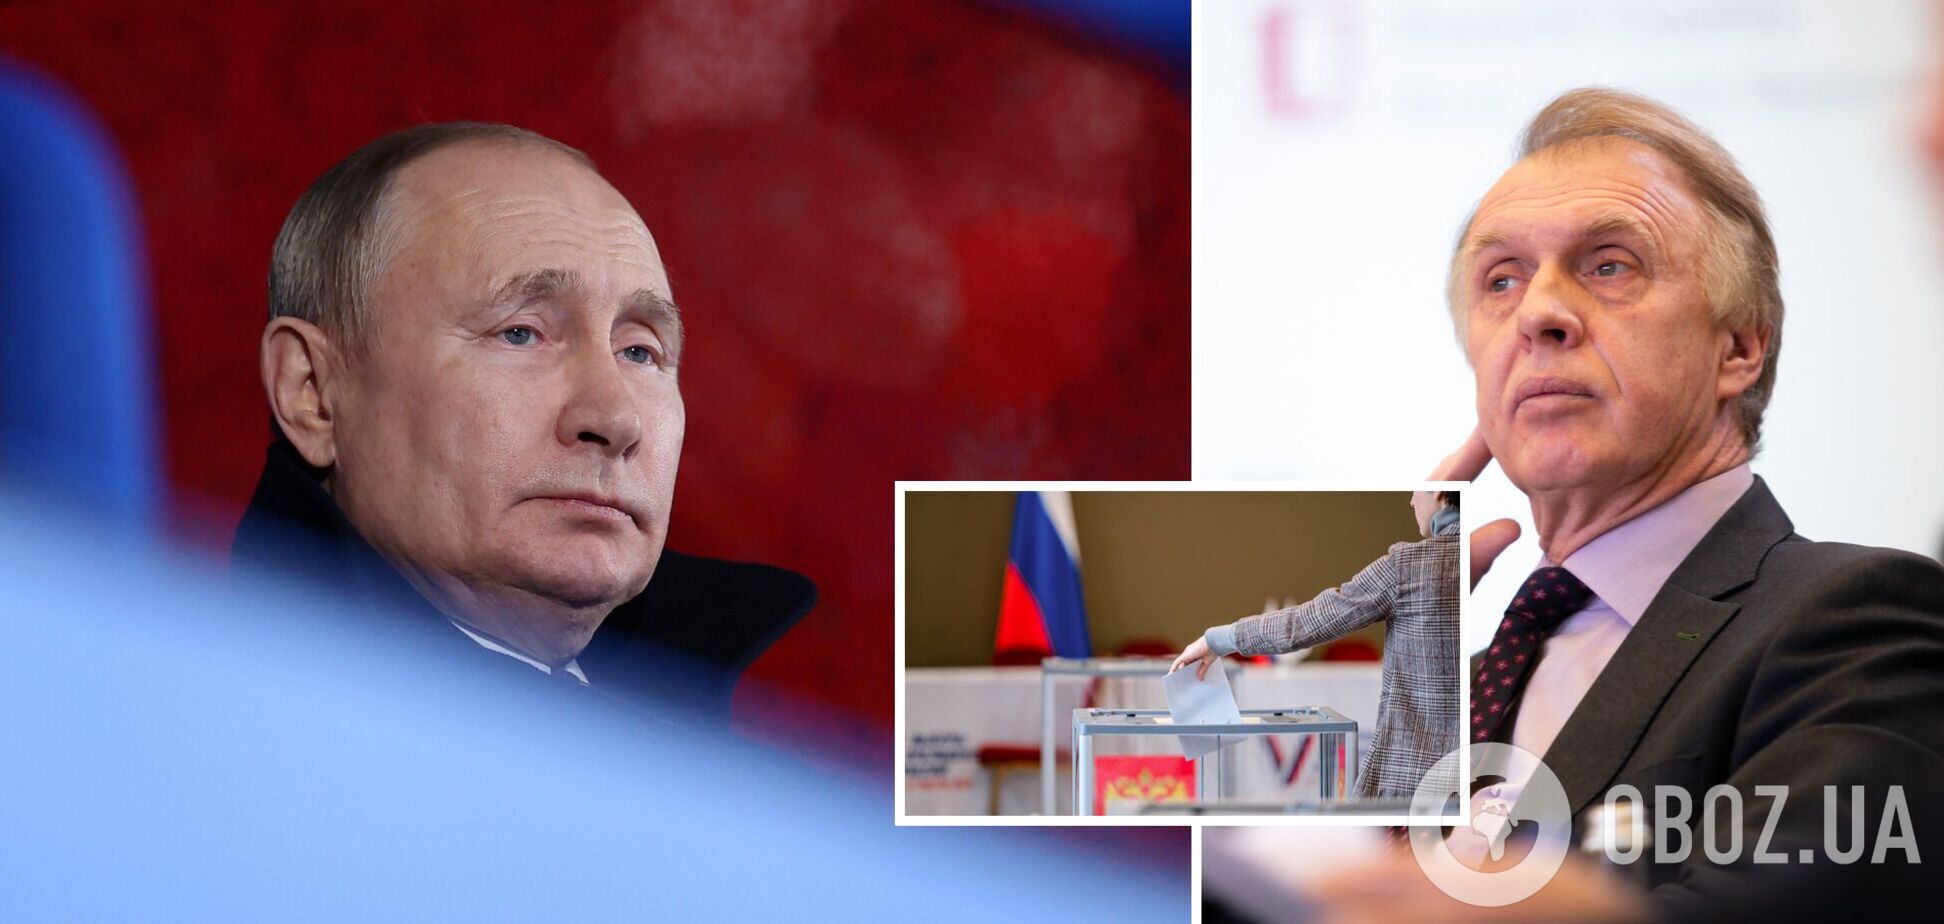 'Формується диктаторський інтернаціонал': Огризко пояснив, що стоїть за привітаннями Путіна з перемогою на 'виборах'
